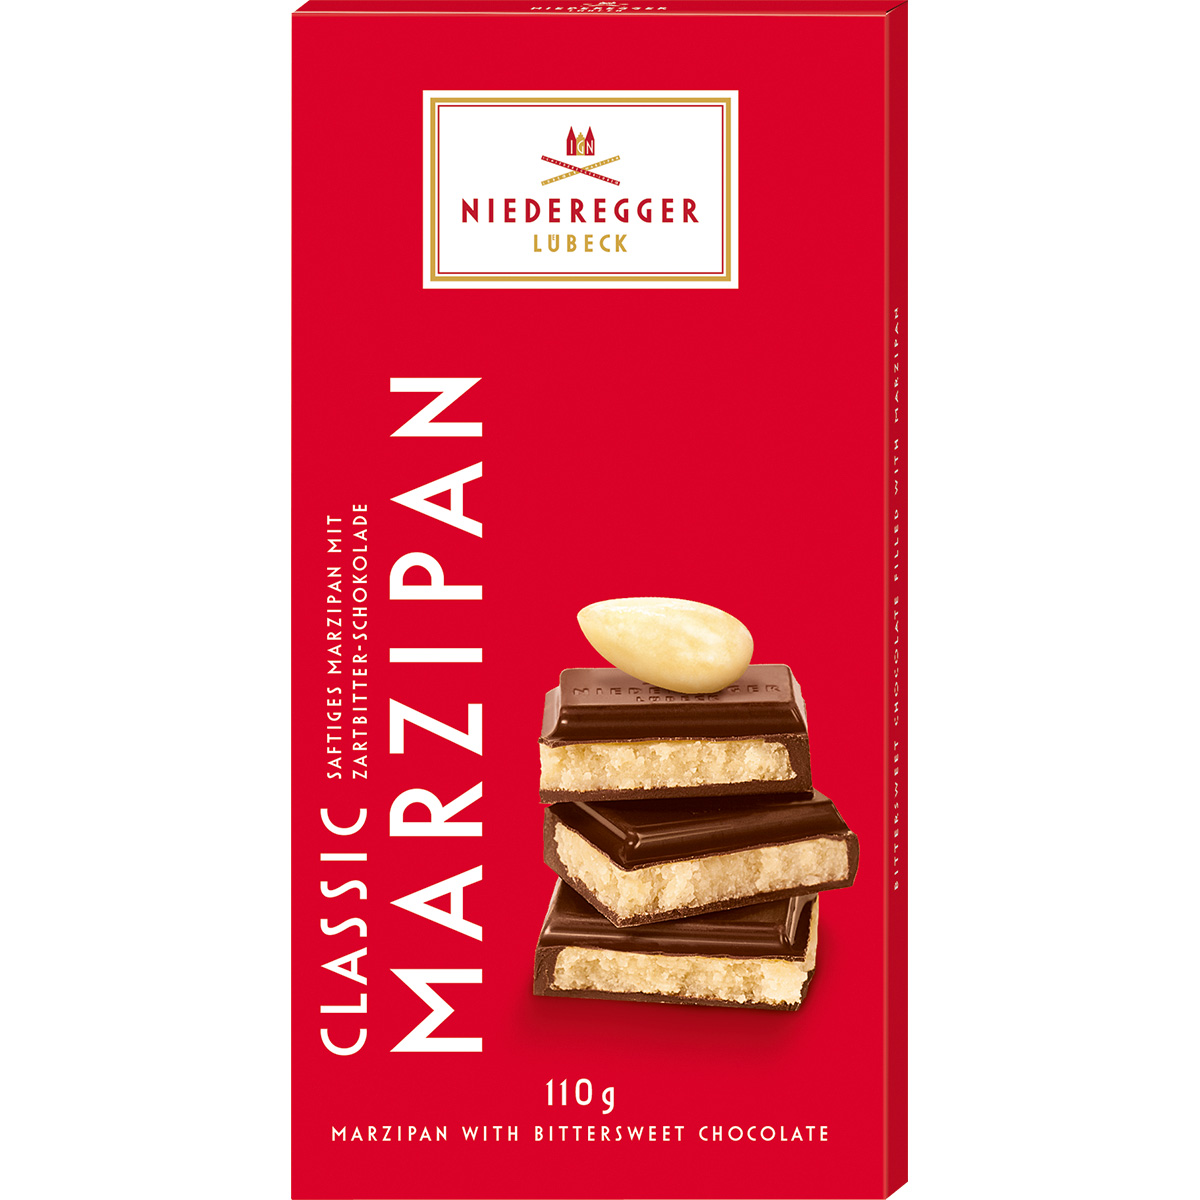 Niederegger Marzipan Schokolade Classic, 110 g

